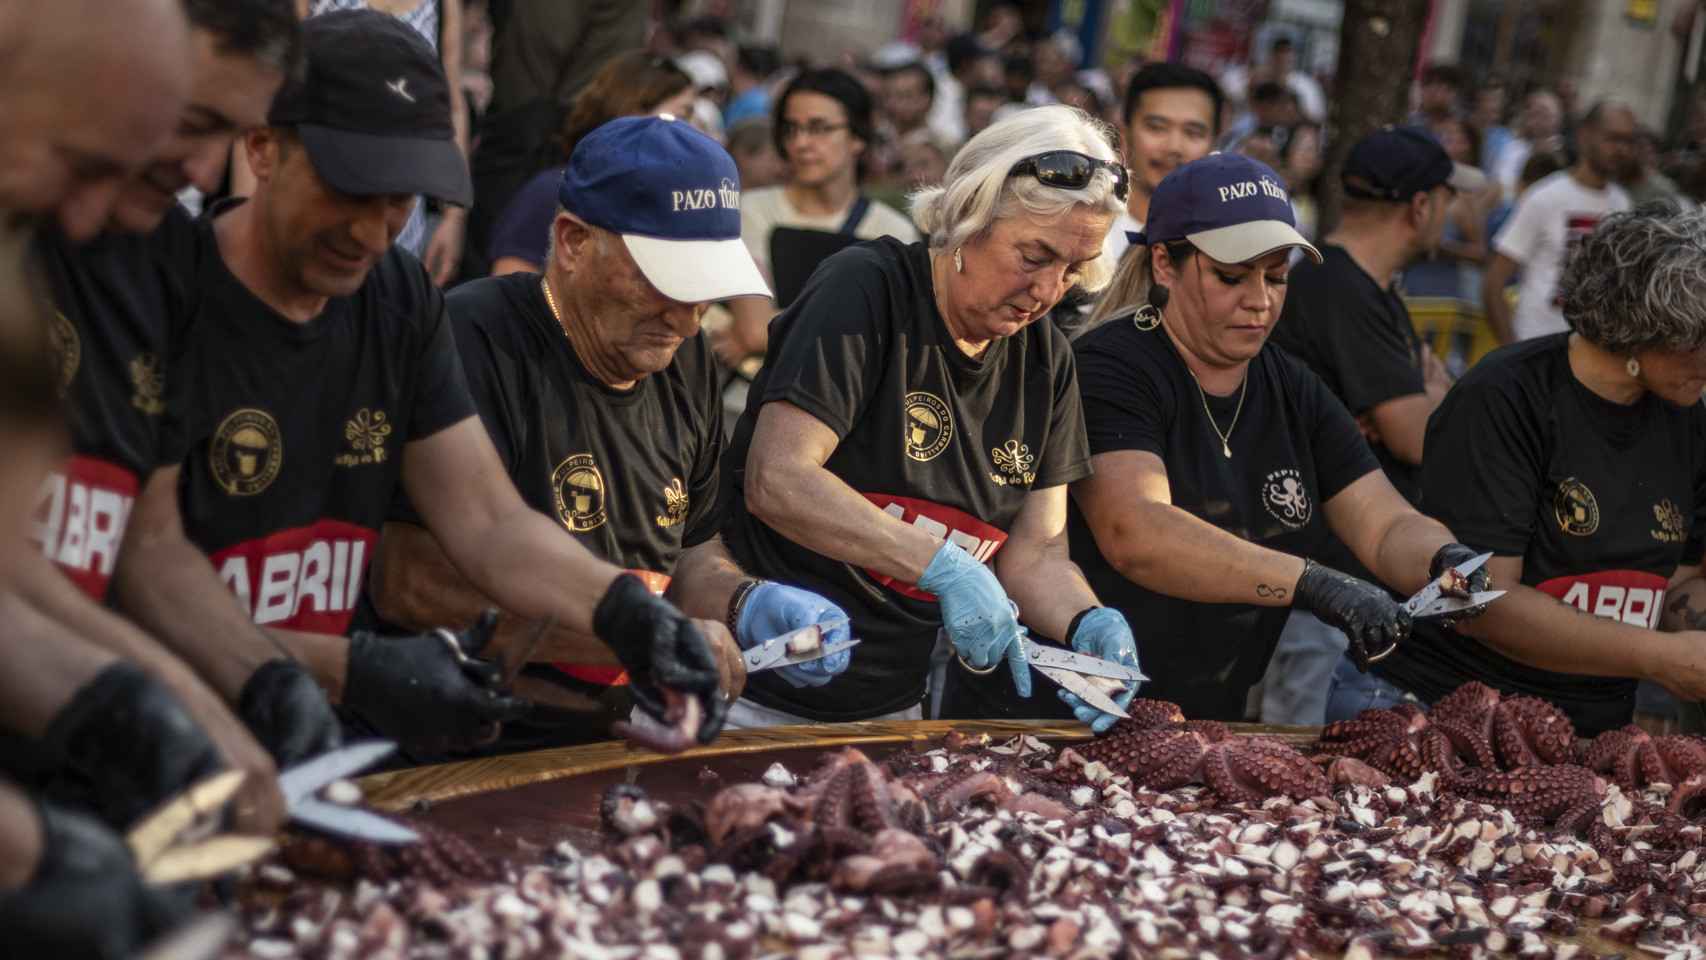 Pulpeiras y pulpeiros concentrados en la preparación de la tapa de pulpo más grande del mundo